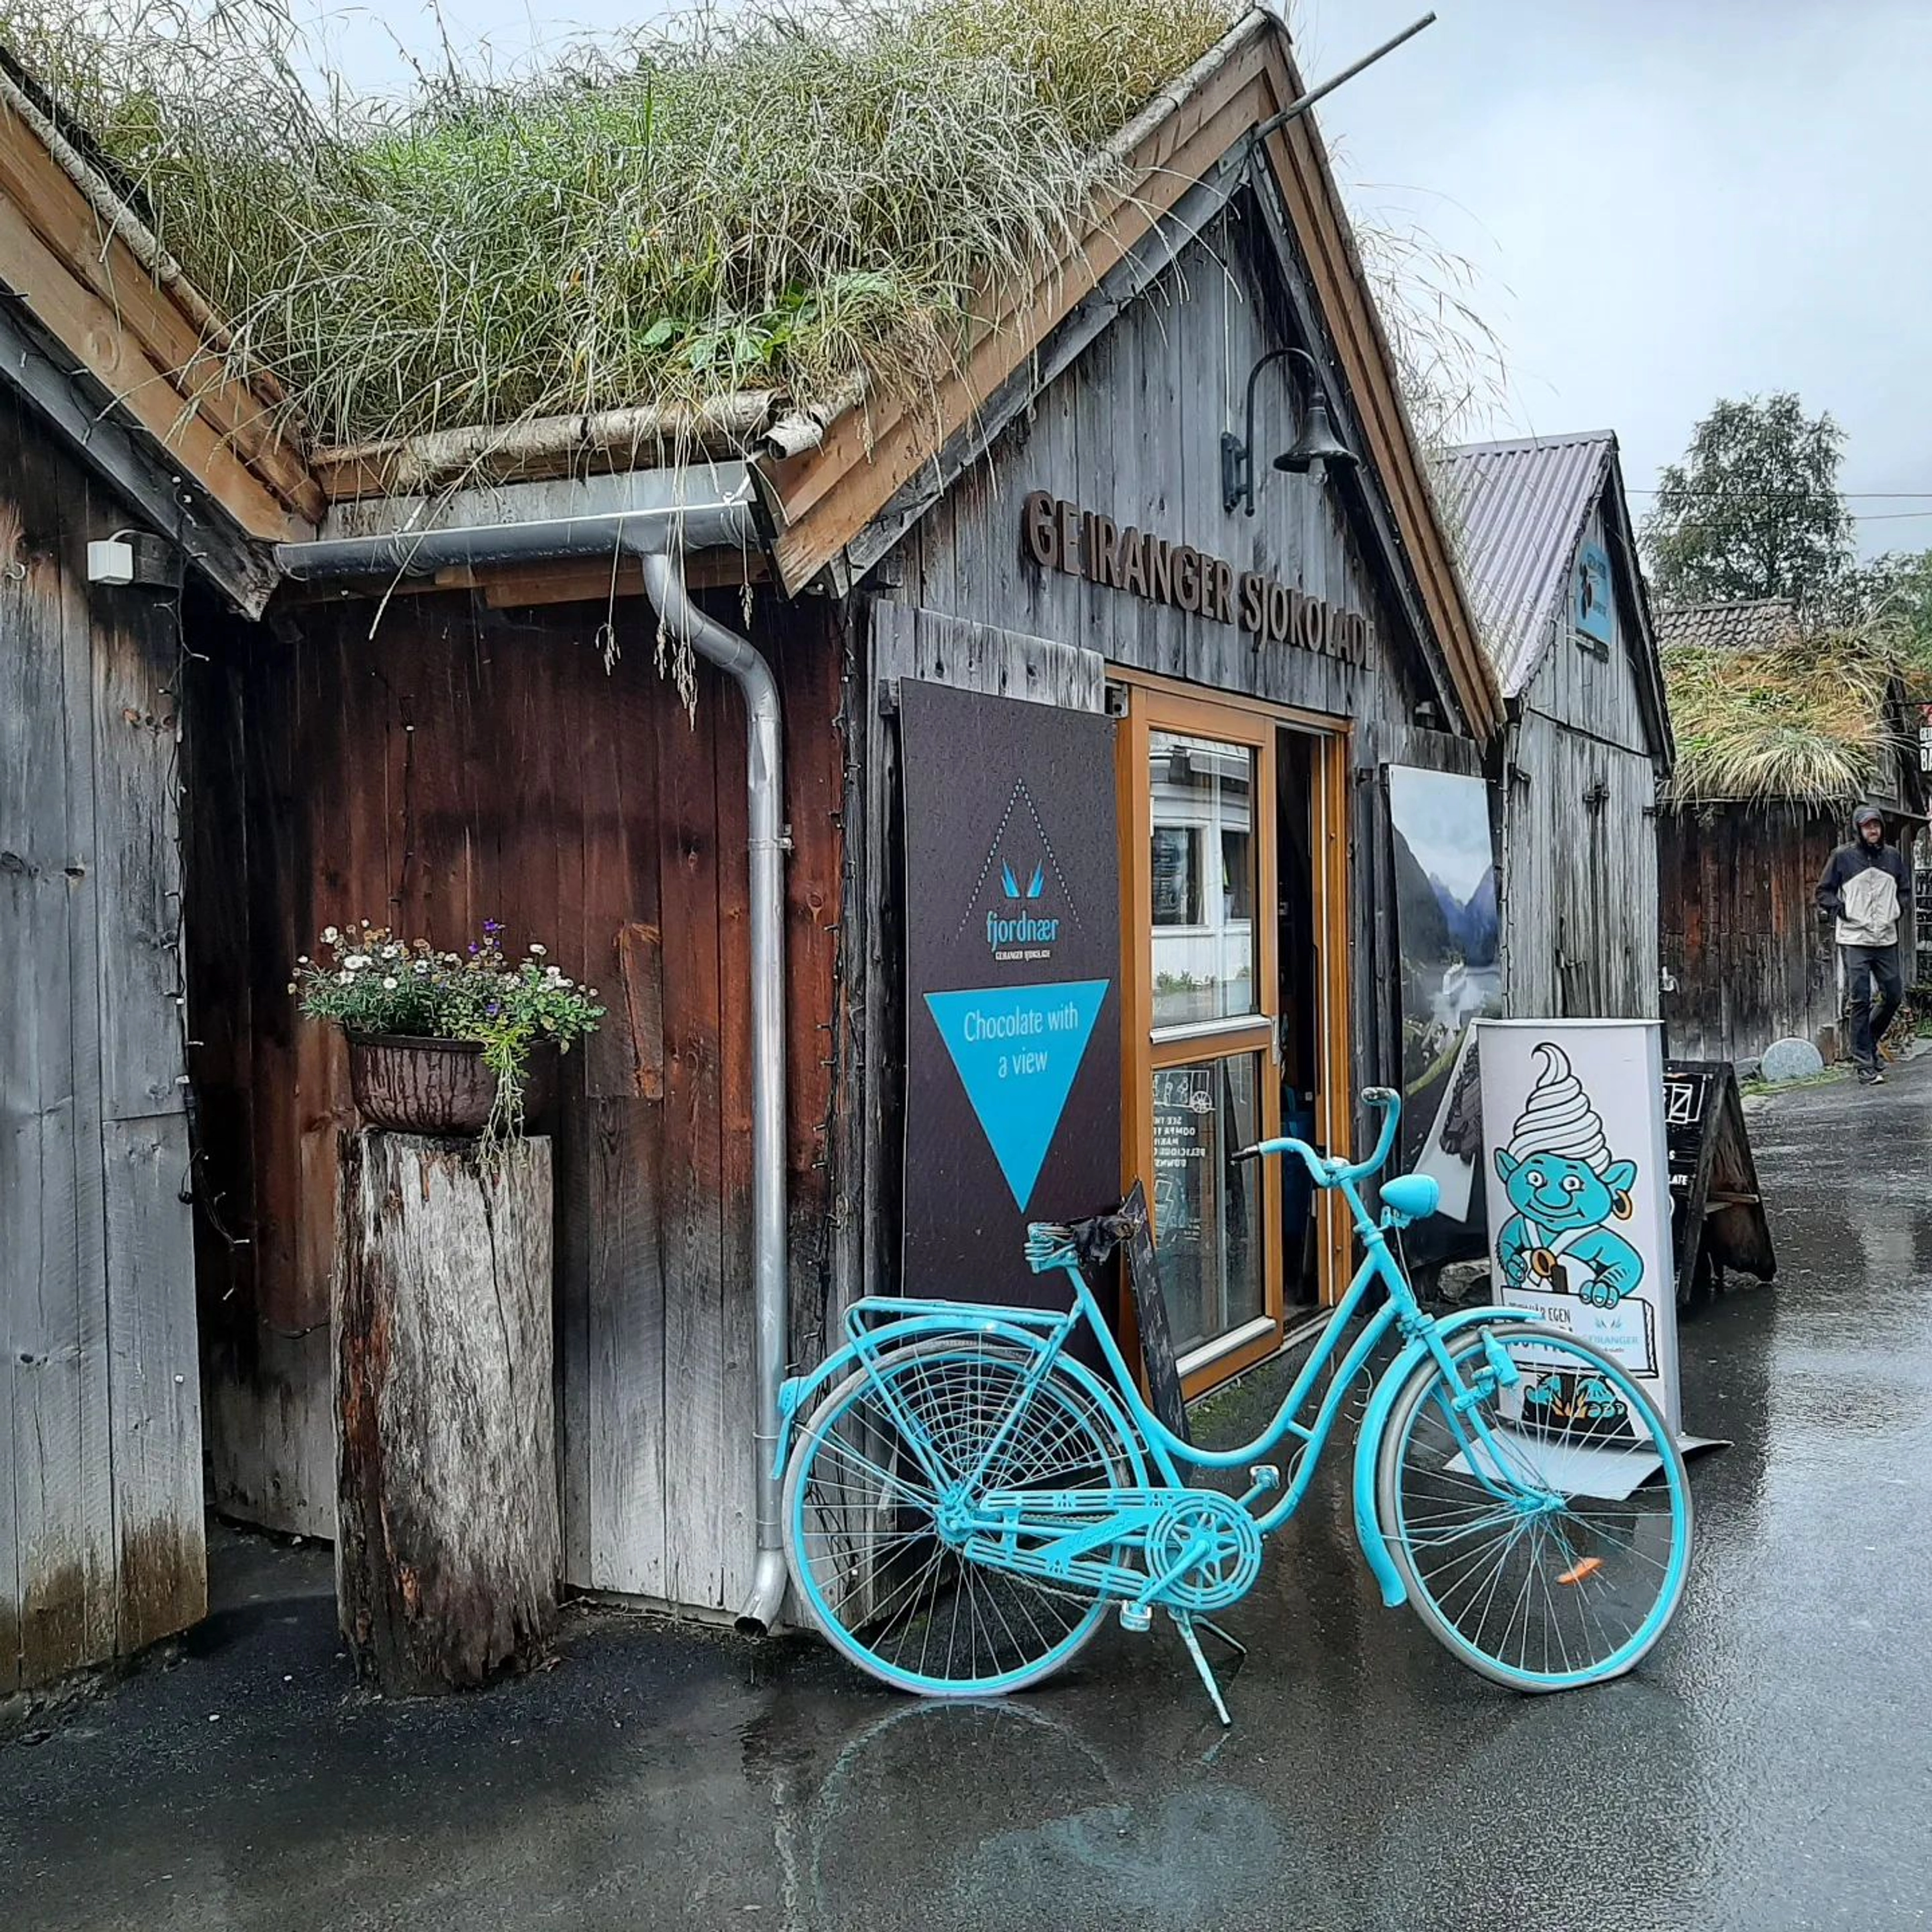 Blue bike in Geiranger, Norway